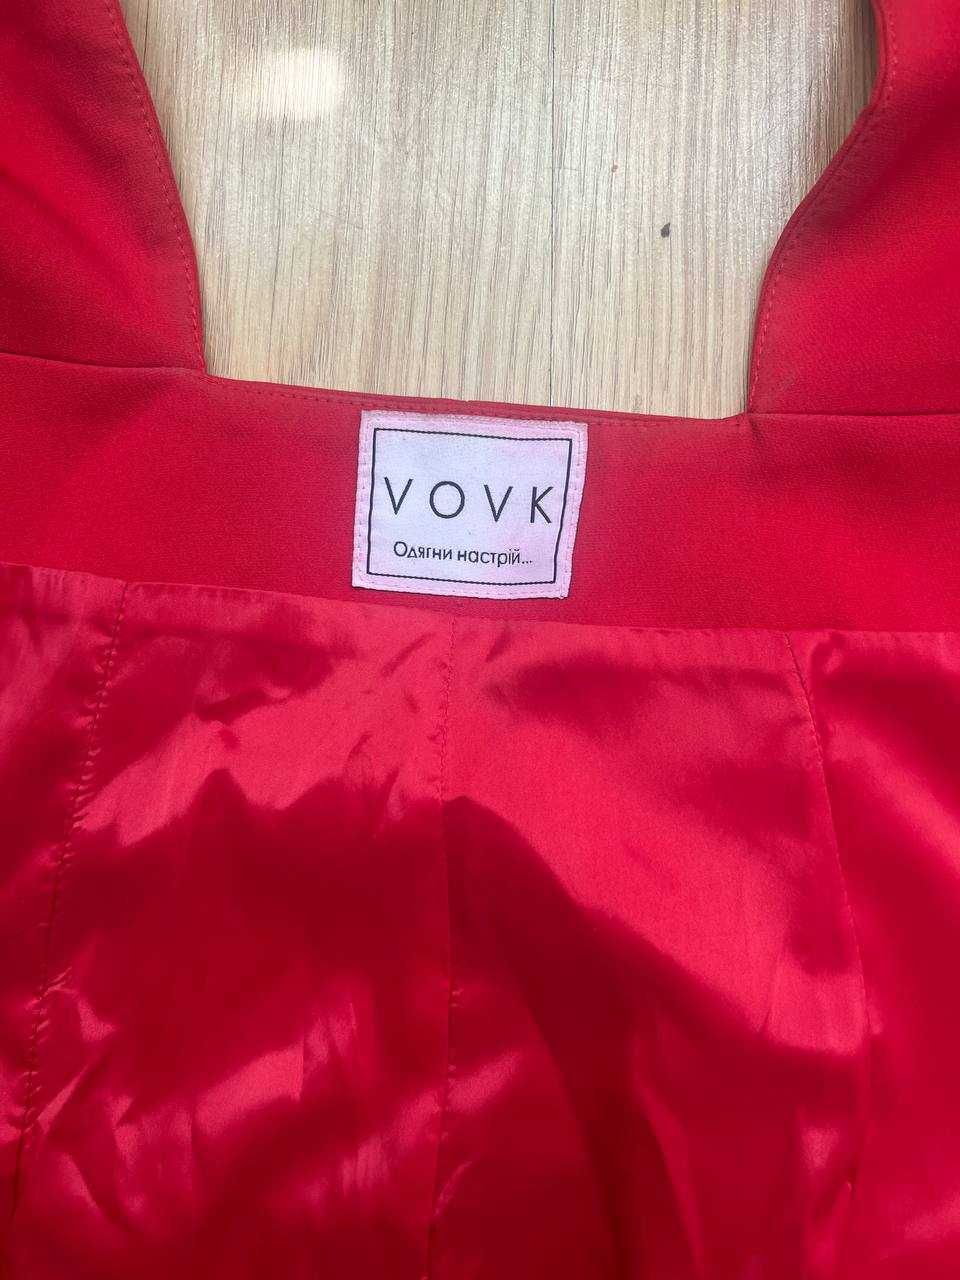 Женское платье - пиджак, VOVK